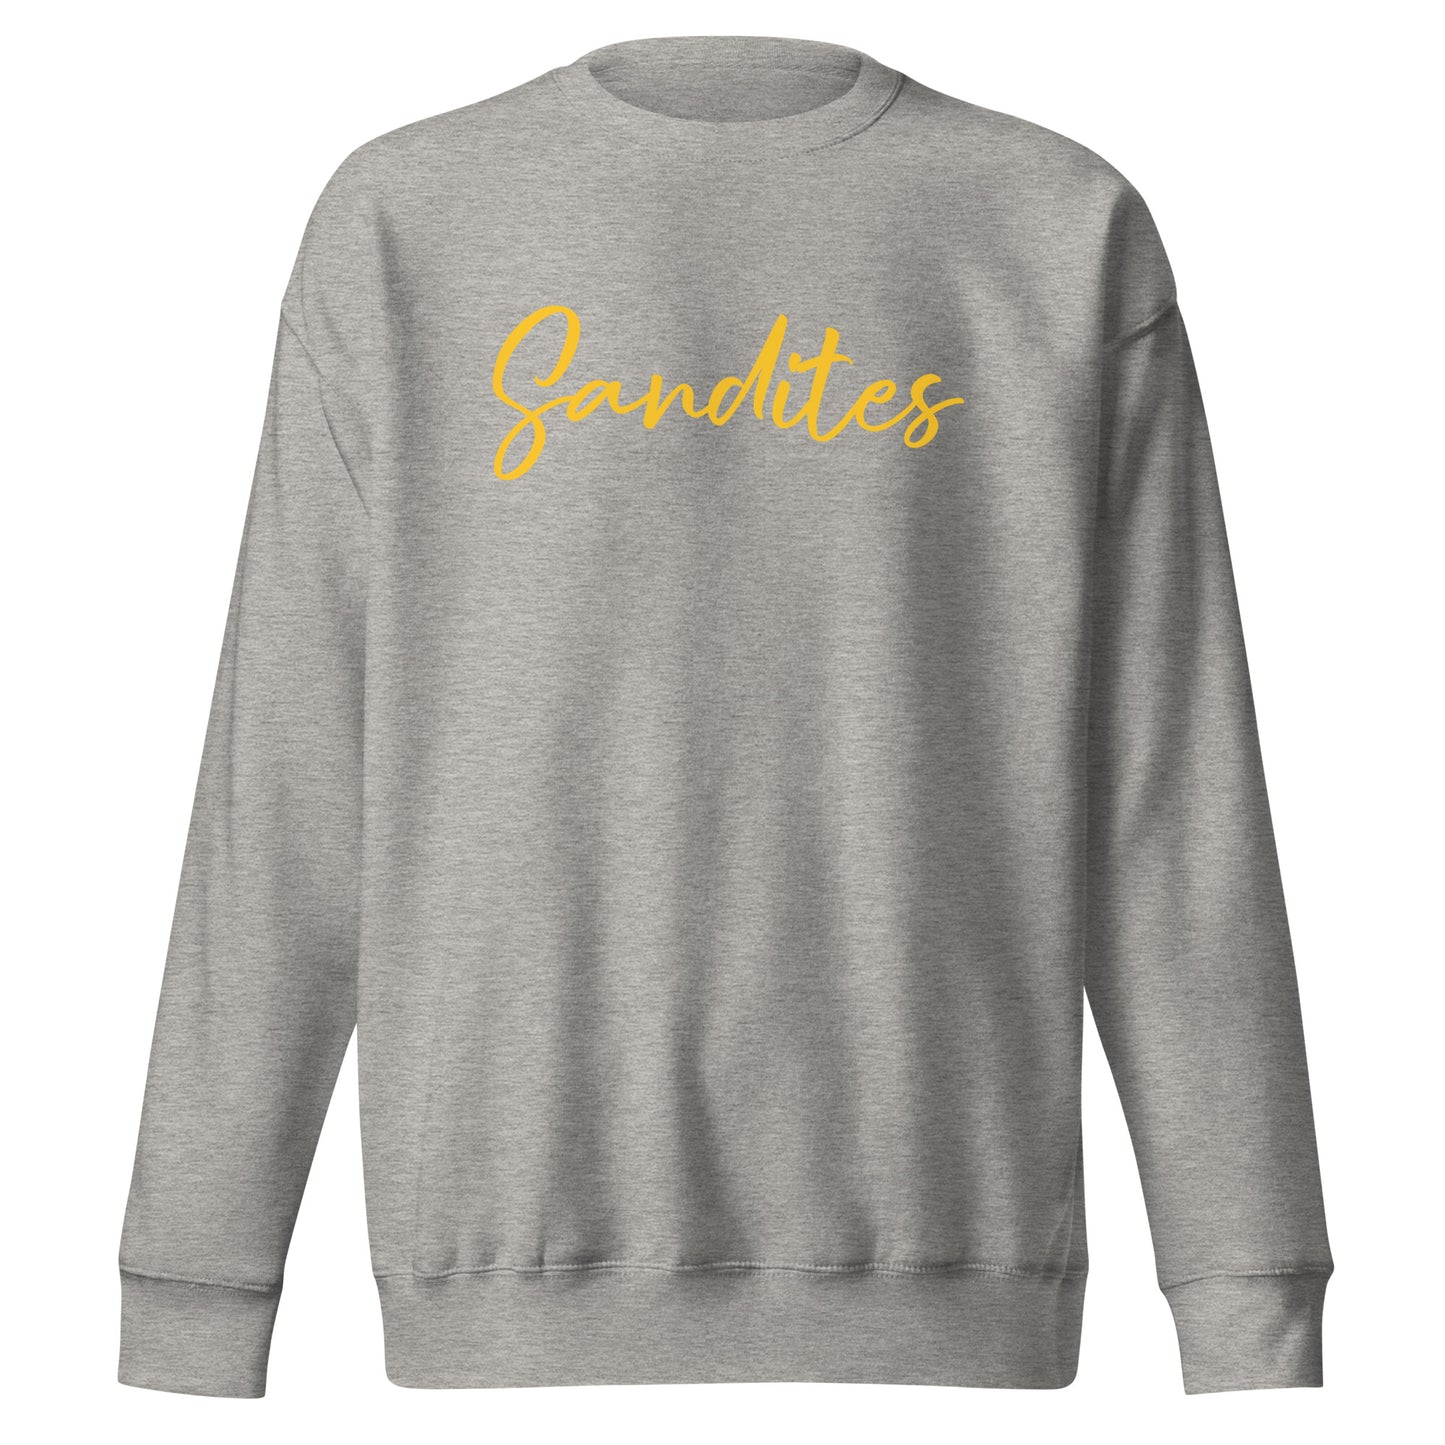 Sandites - Yellow Logo - Adult Sweatshirt